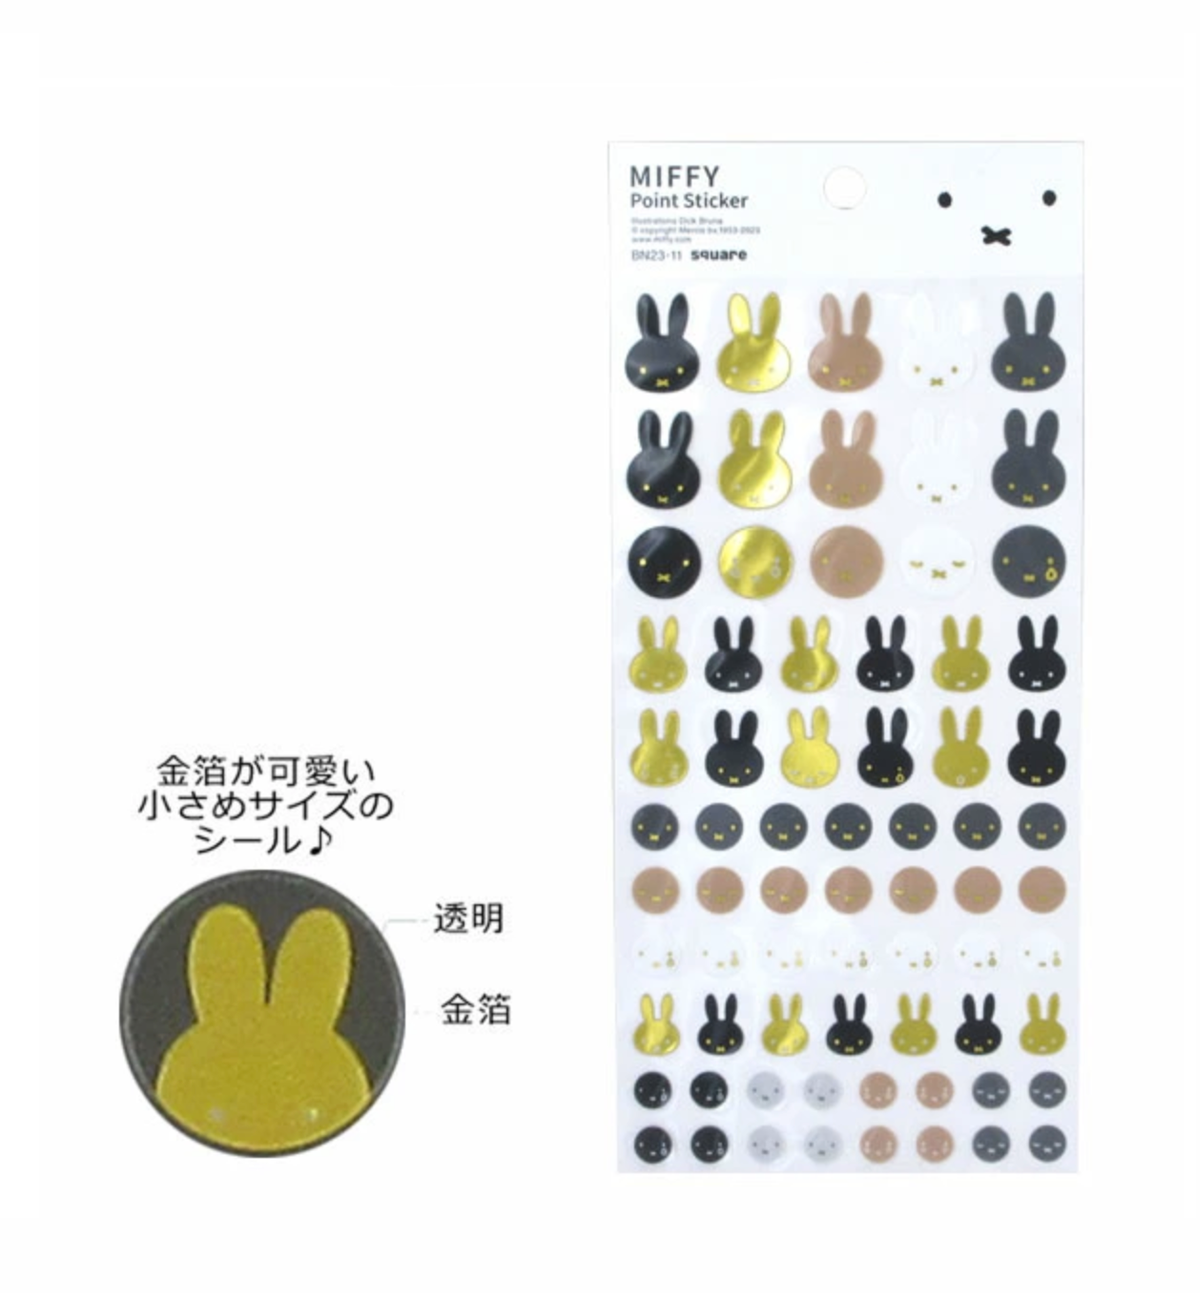 Miffy Golden Point Seal Sticker [White]